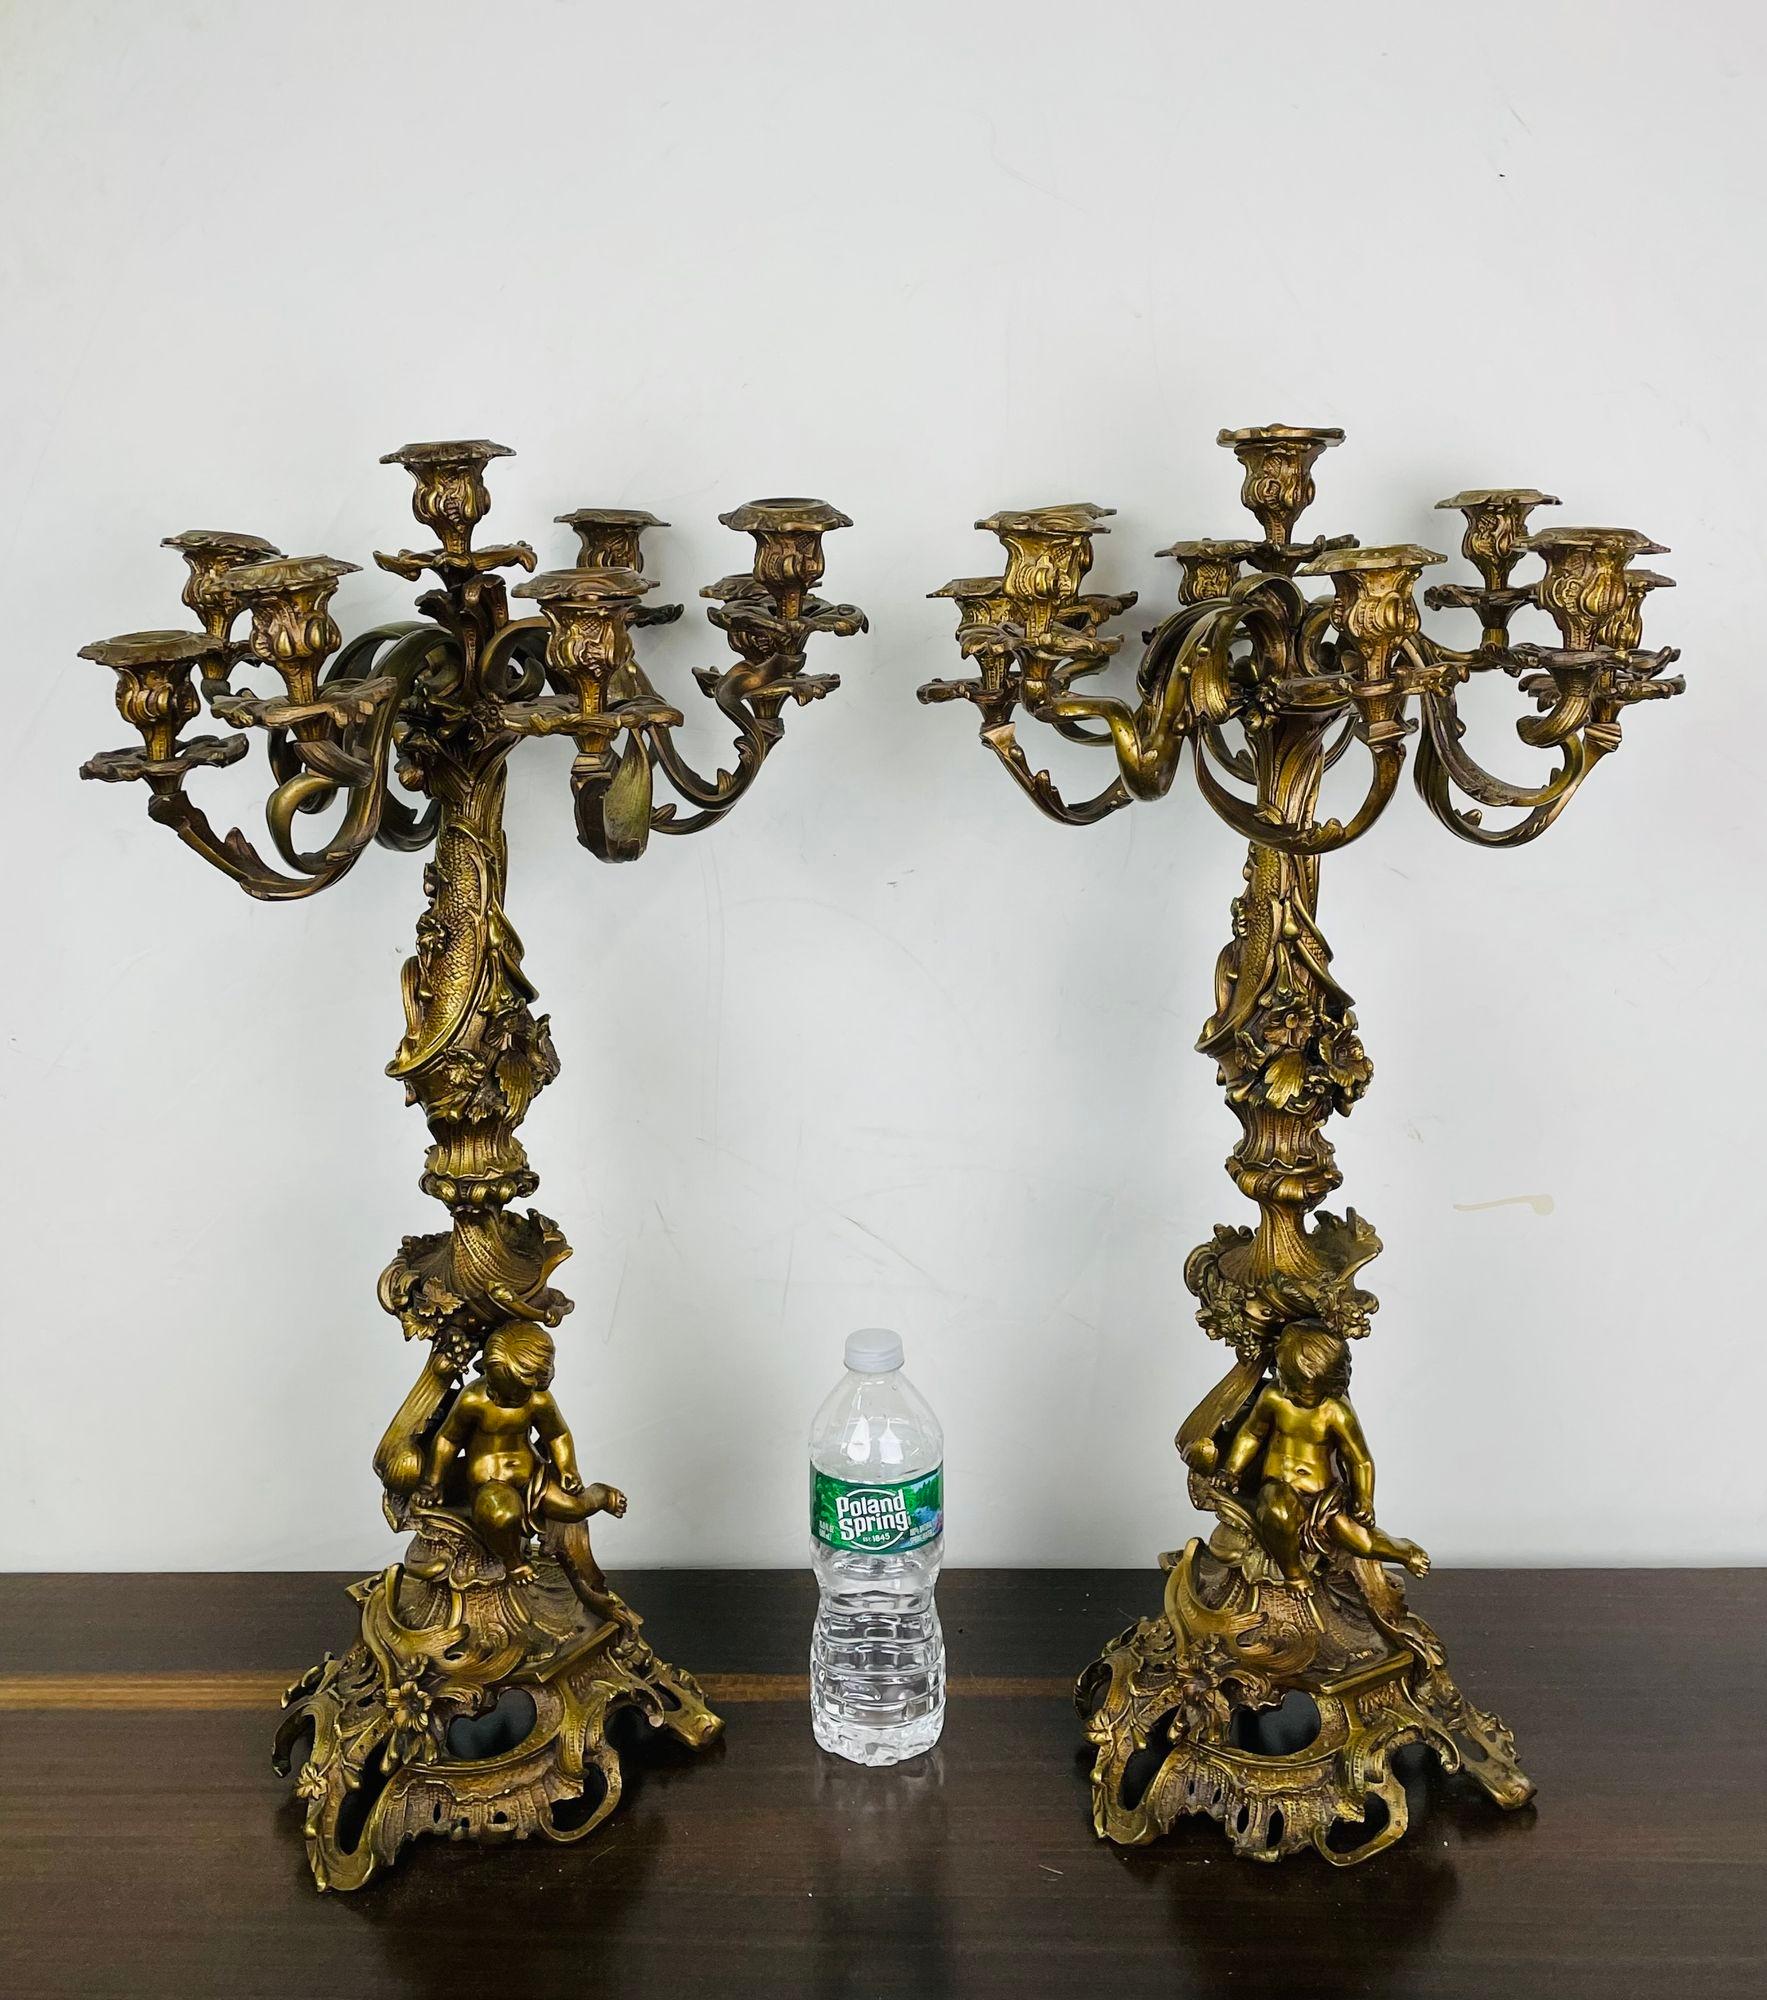 Paire de candélabres en bronze doré de style Louis XVI, forme Florentine avec chérubin
Une grande et impressionnante paire de candélabres, chacun ayant un grand groupe de neuf bras pour les chandeliers sur un piédestal central en forme de colonne